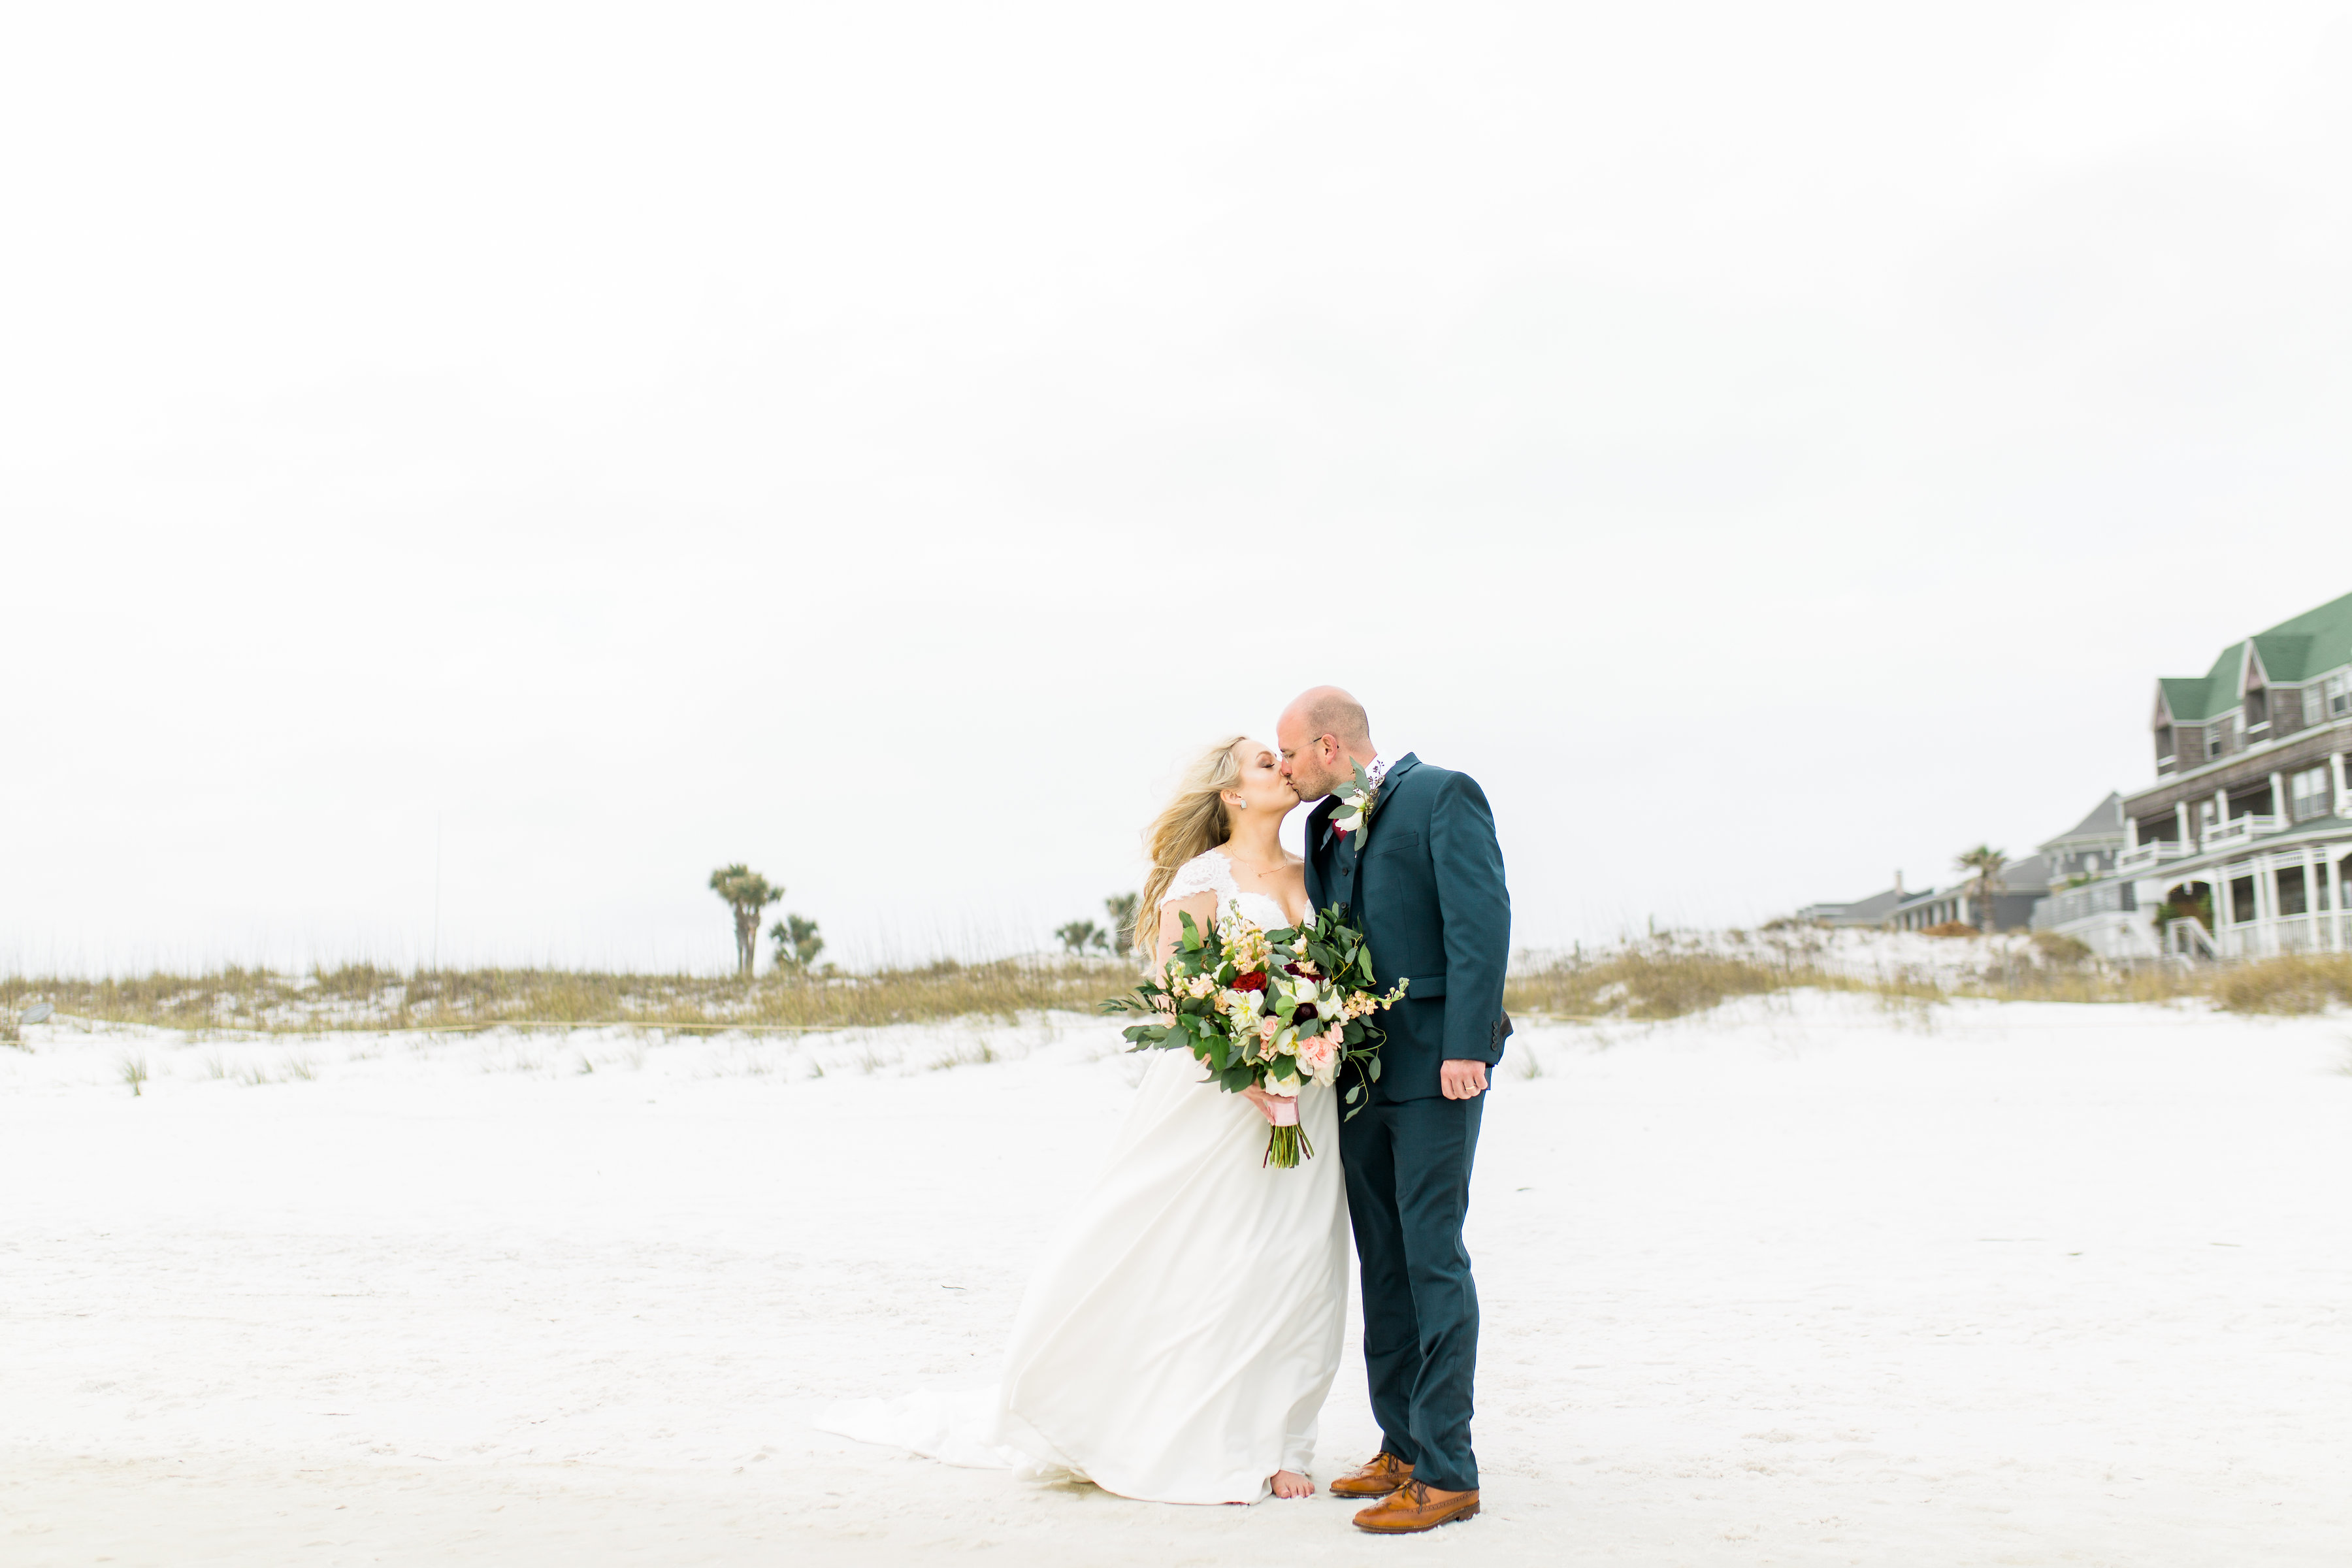 Henderson beach destin florida wedding florals